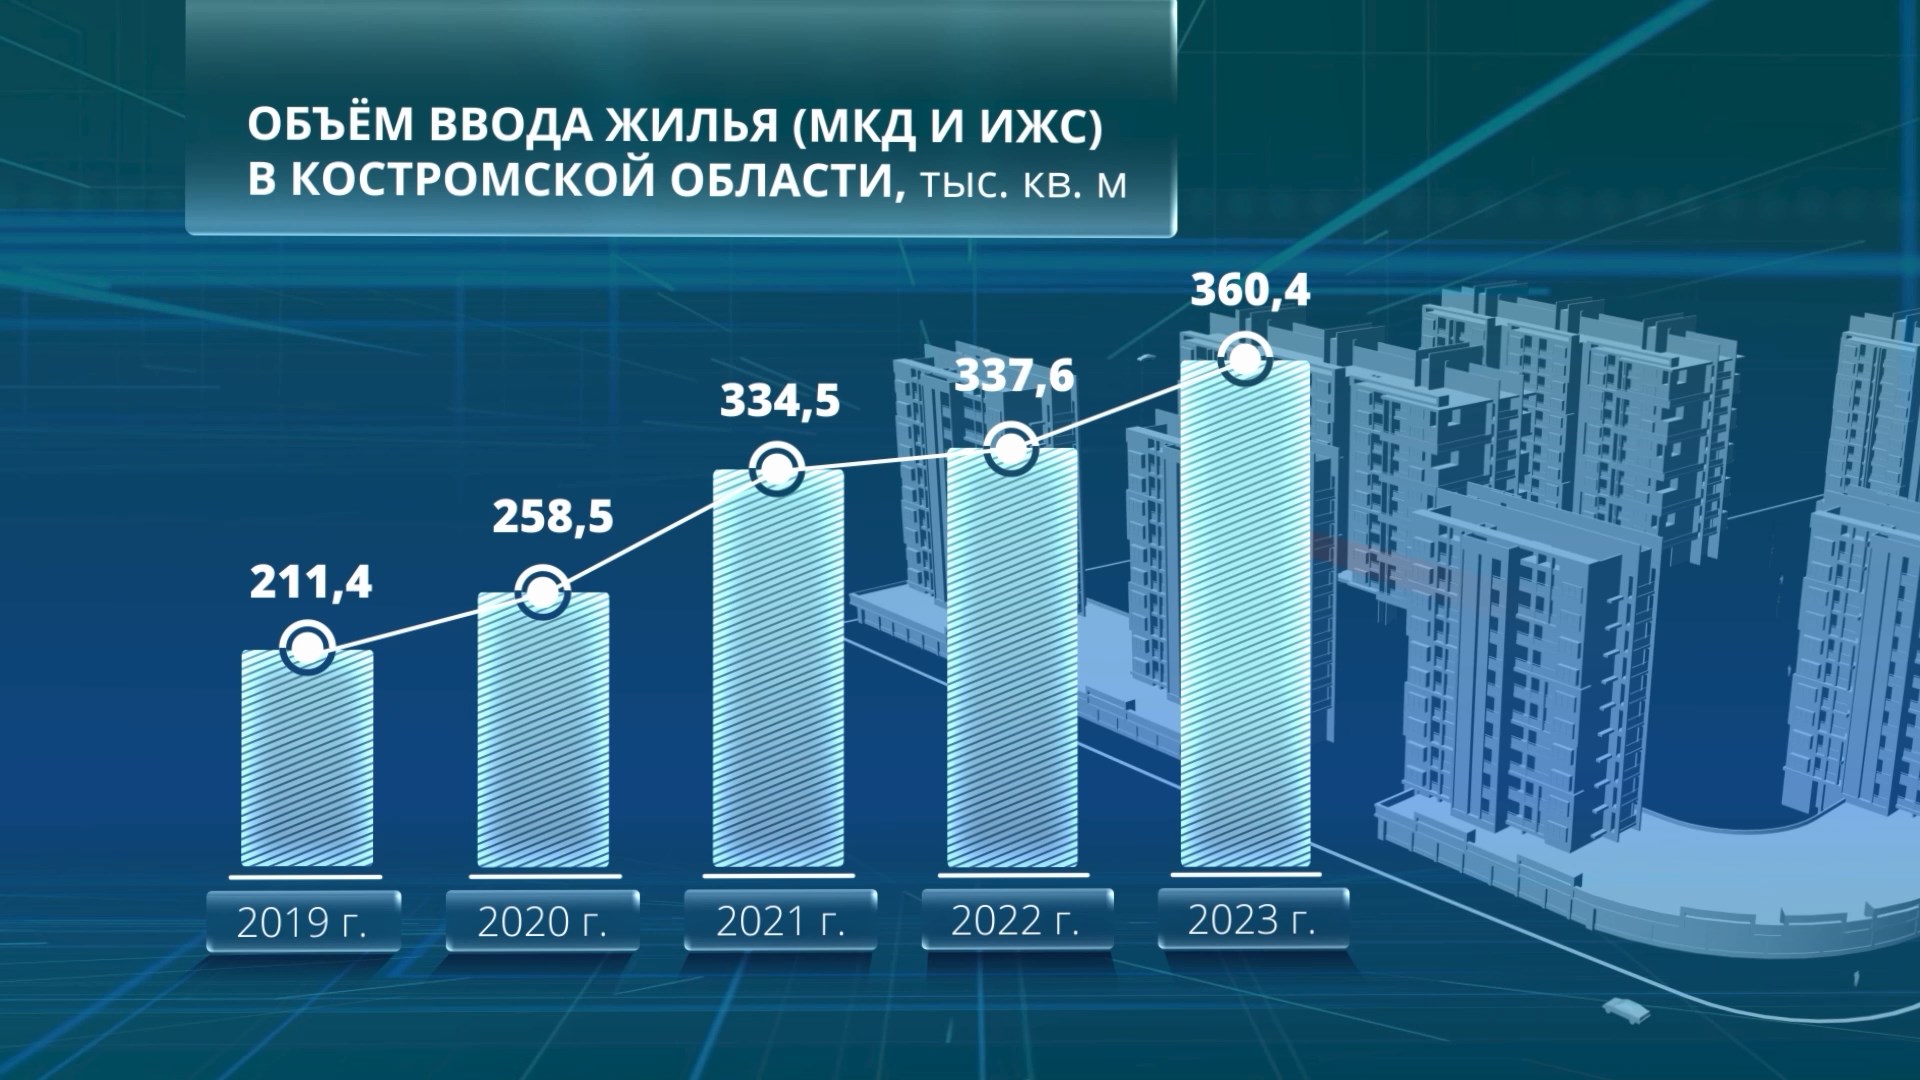 Объем ввода жилья за пятилетку в Костромской области составил 1500 тысяч квадратных метров